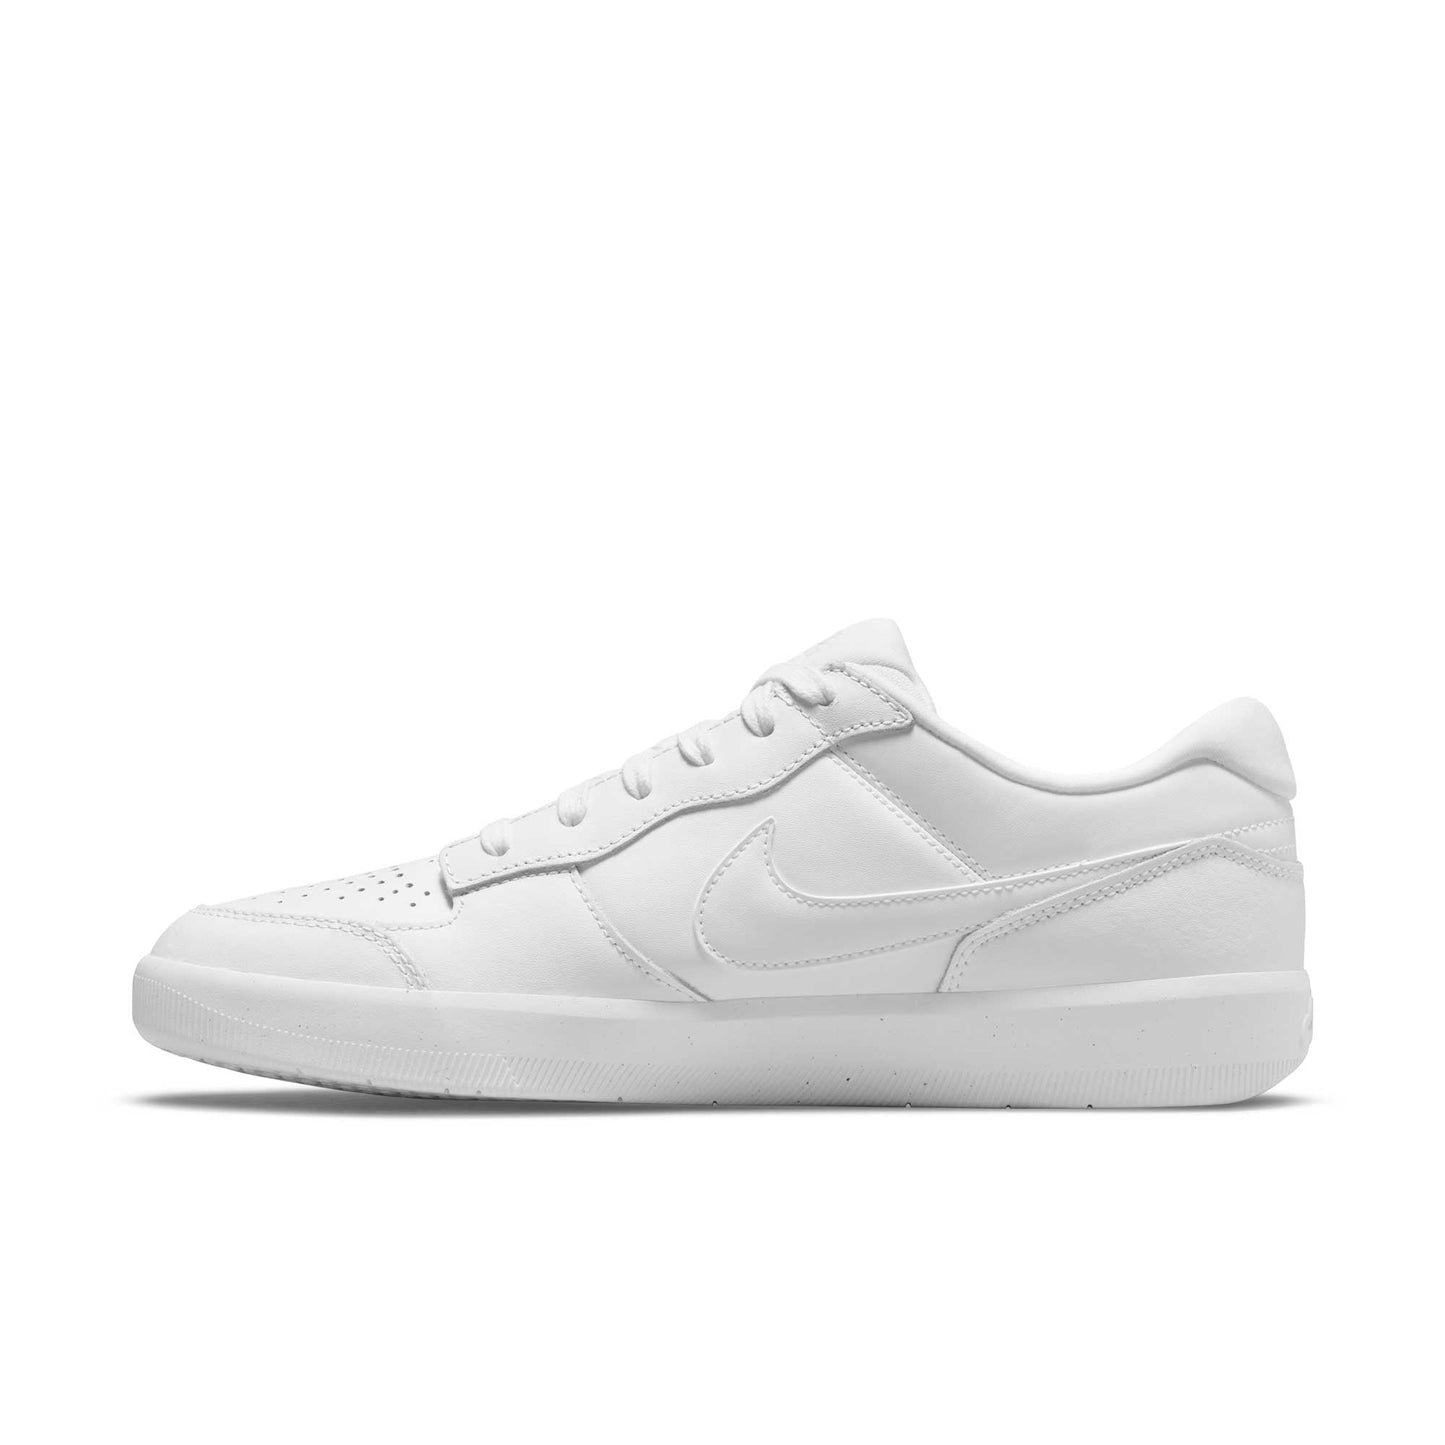 Nike SB Force 58 Premium, white/white-white-white - Tiki Room Skateboards - 6